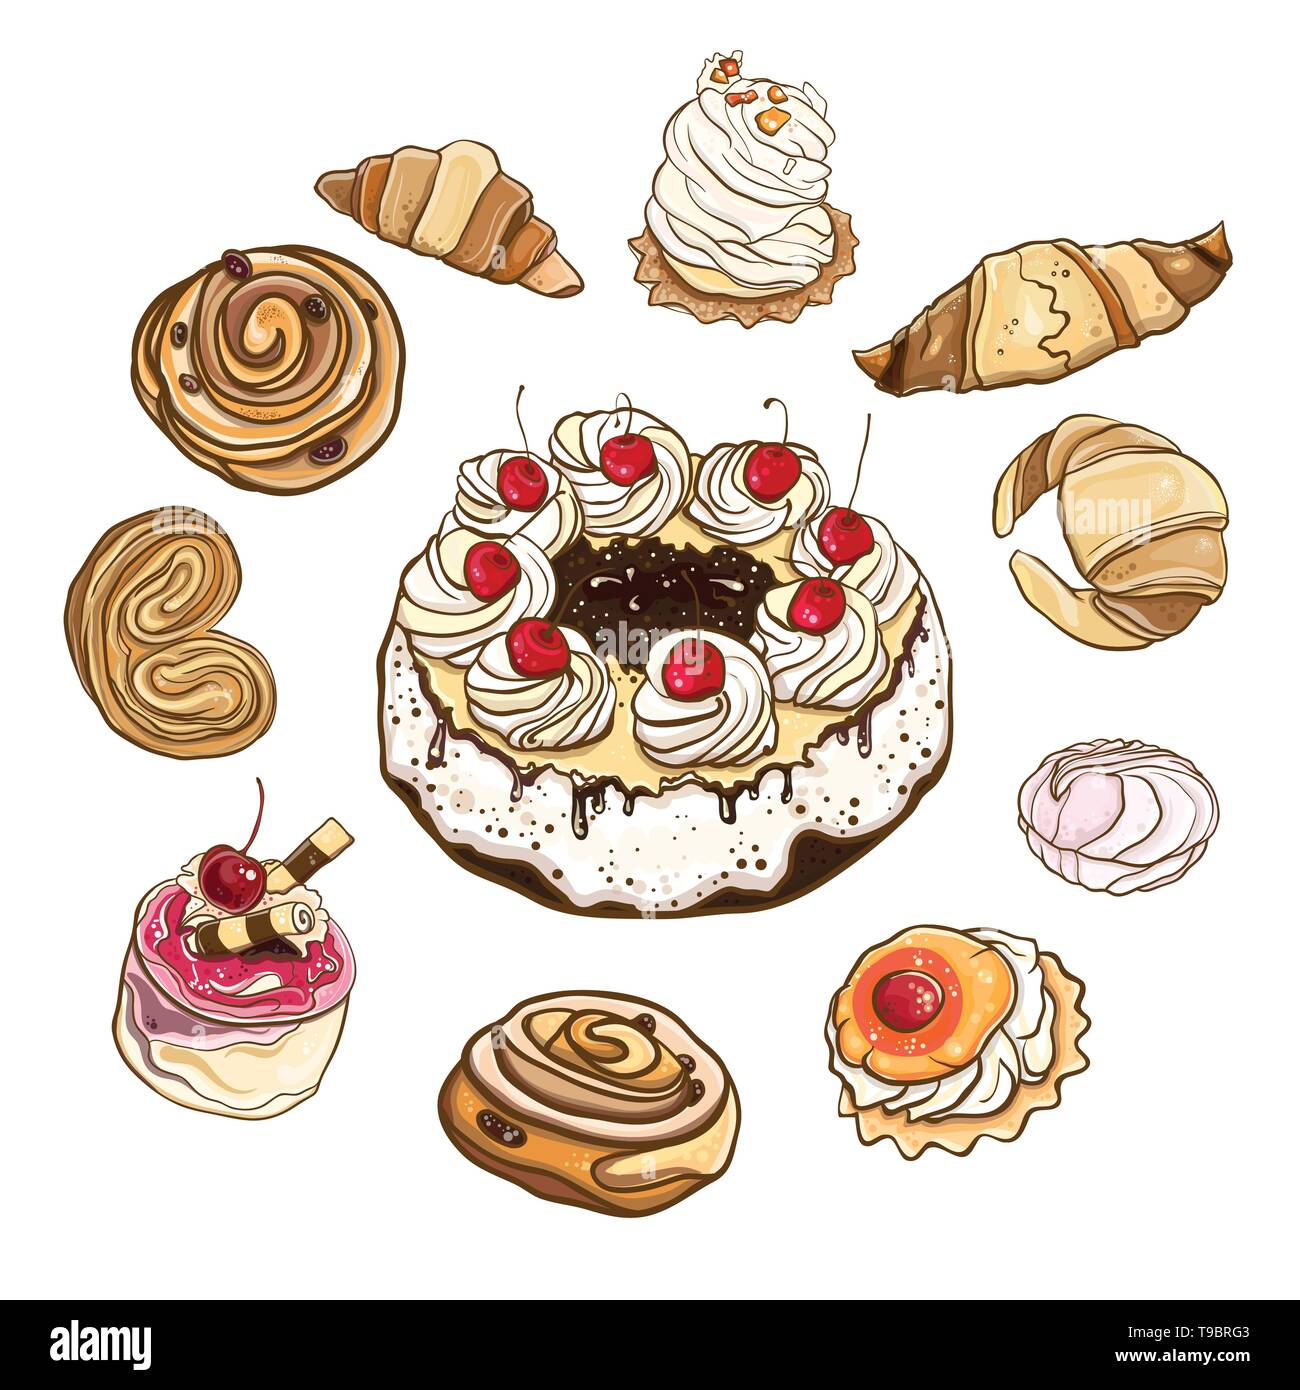 Serie di ciambelle dolci e torte. Illustrazione Vettoriale di pasticcini e dolci. Oggetti isolati. eps 10 Illustrazione Vettoriale